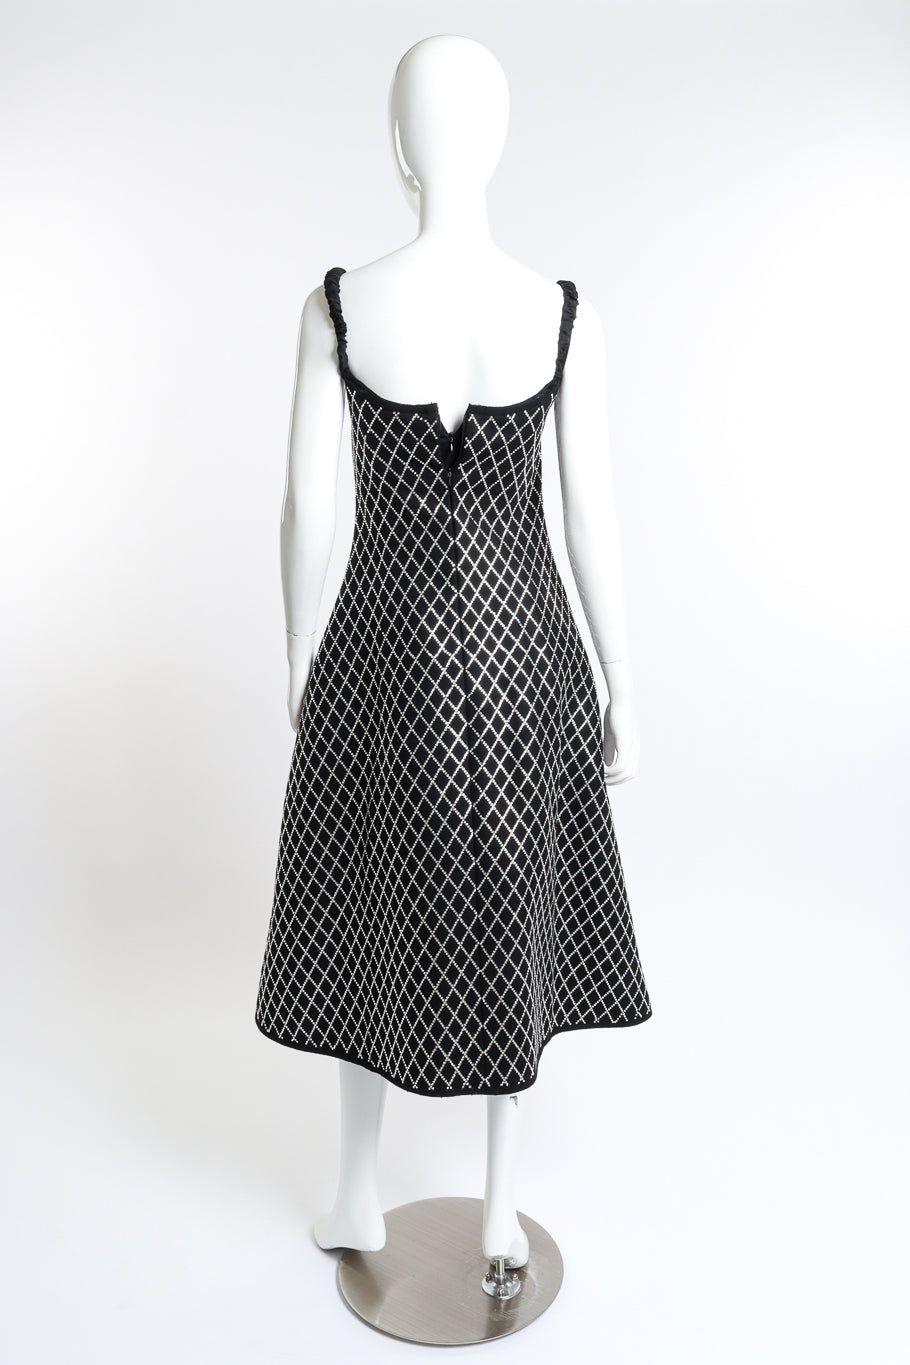 Khaite Diamond Crystal Studded Midi Dress back on mannequin @recess la